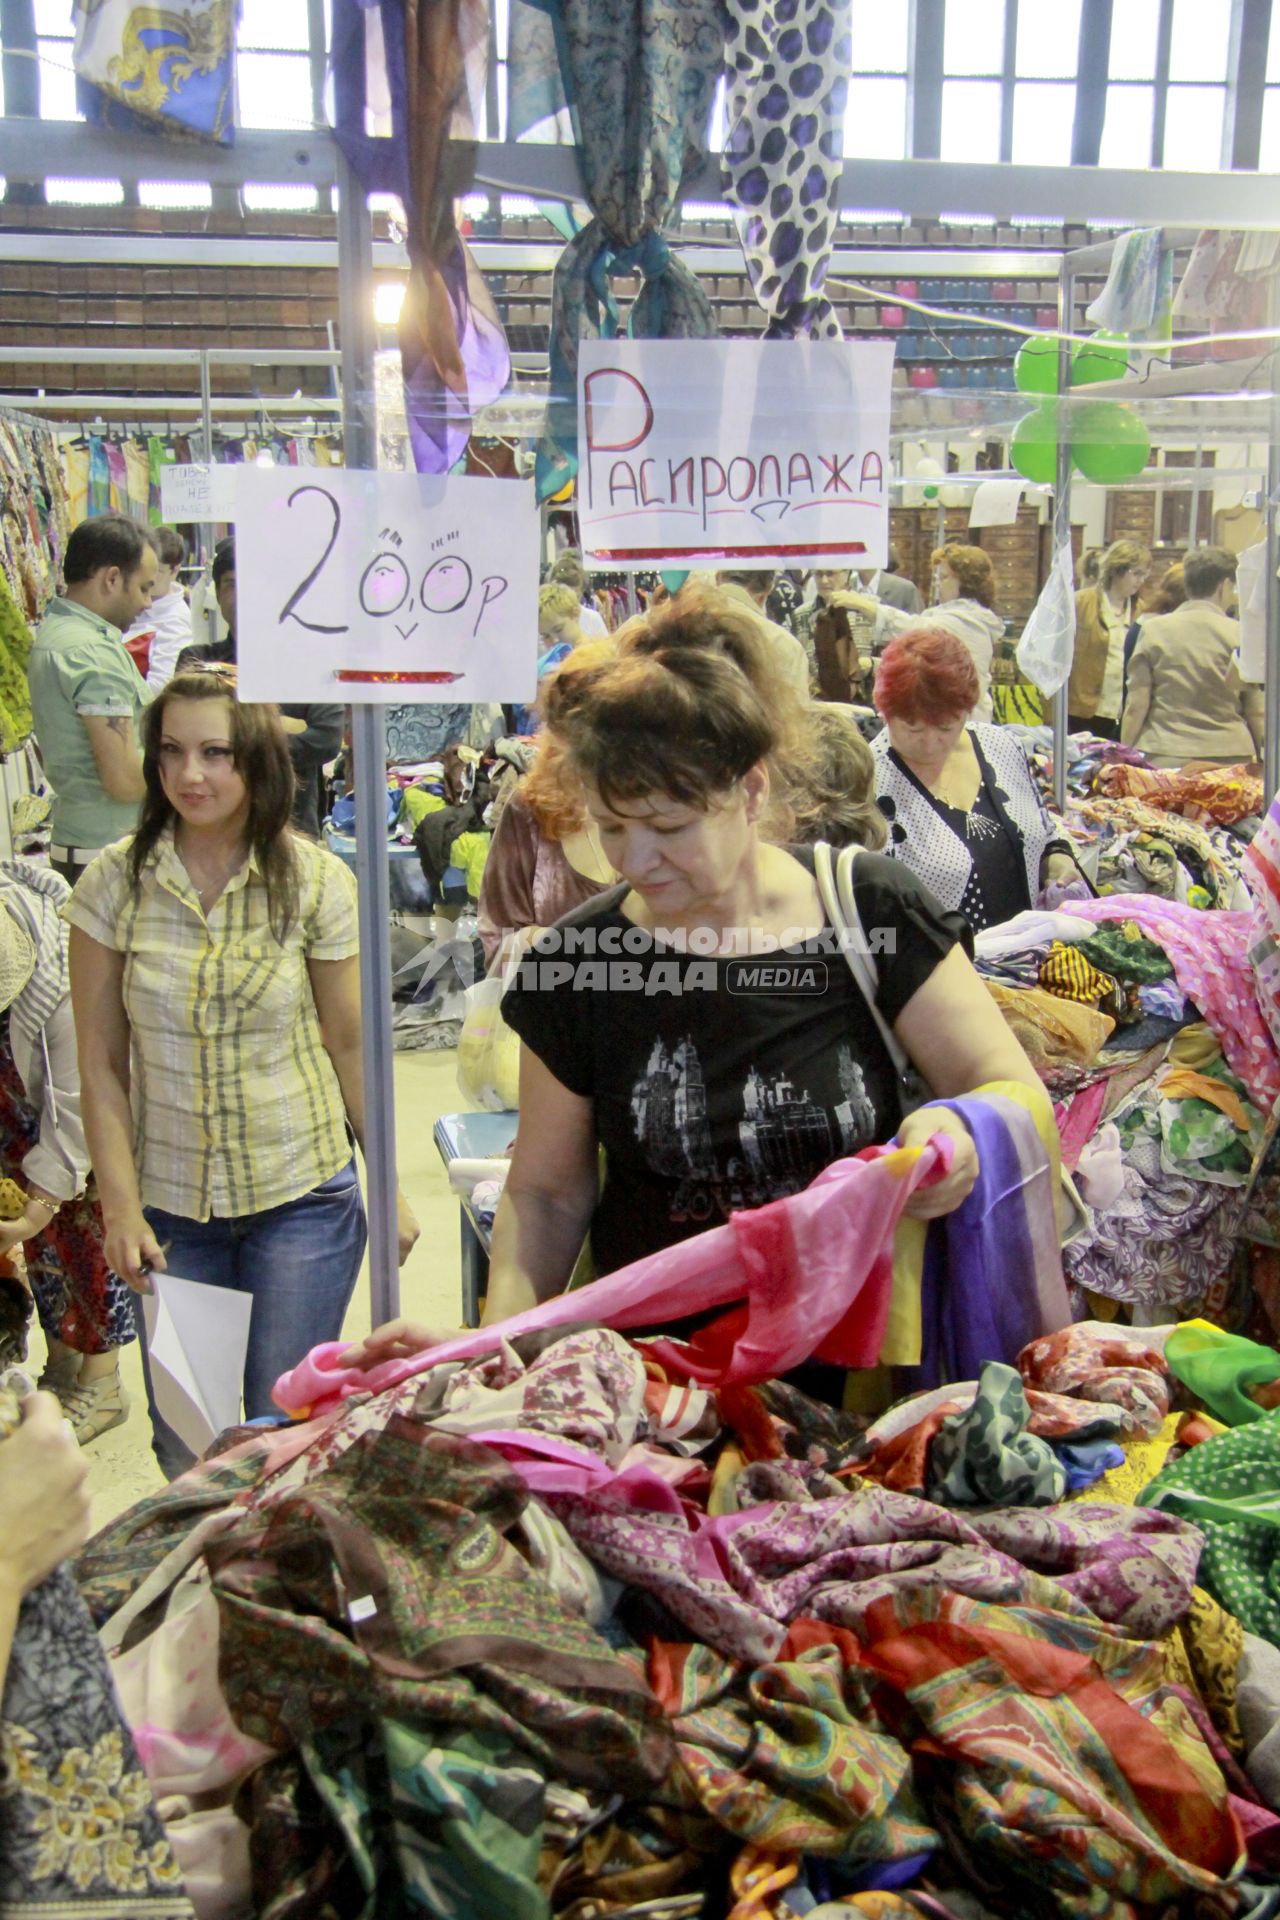 Ярмарка `Все лучшее из Индии` в Барнауле. На снимке: вещевой рынок. Покупатели выбирают товар.